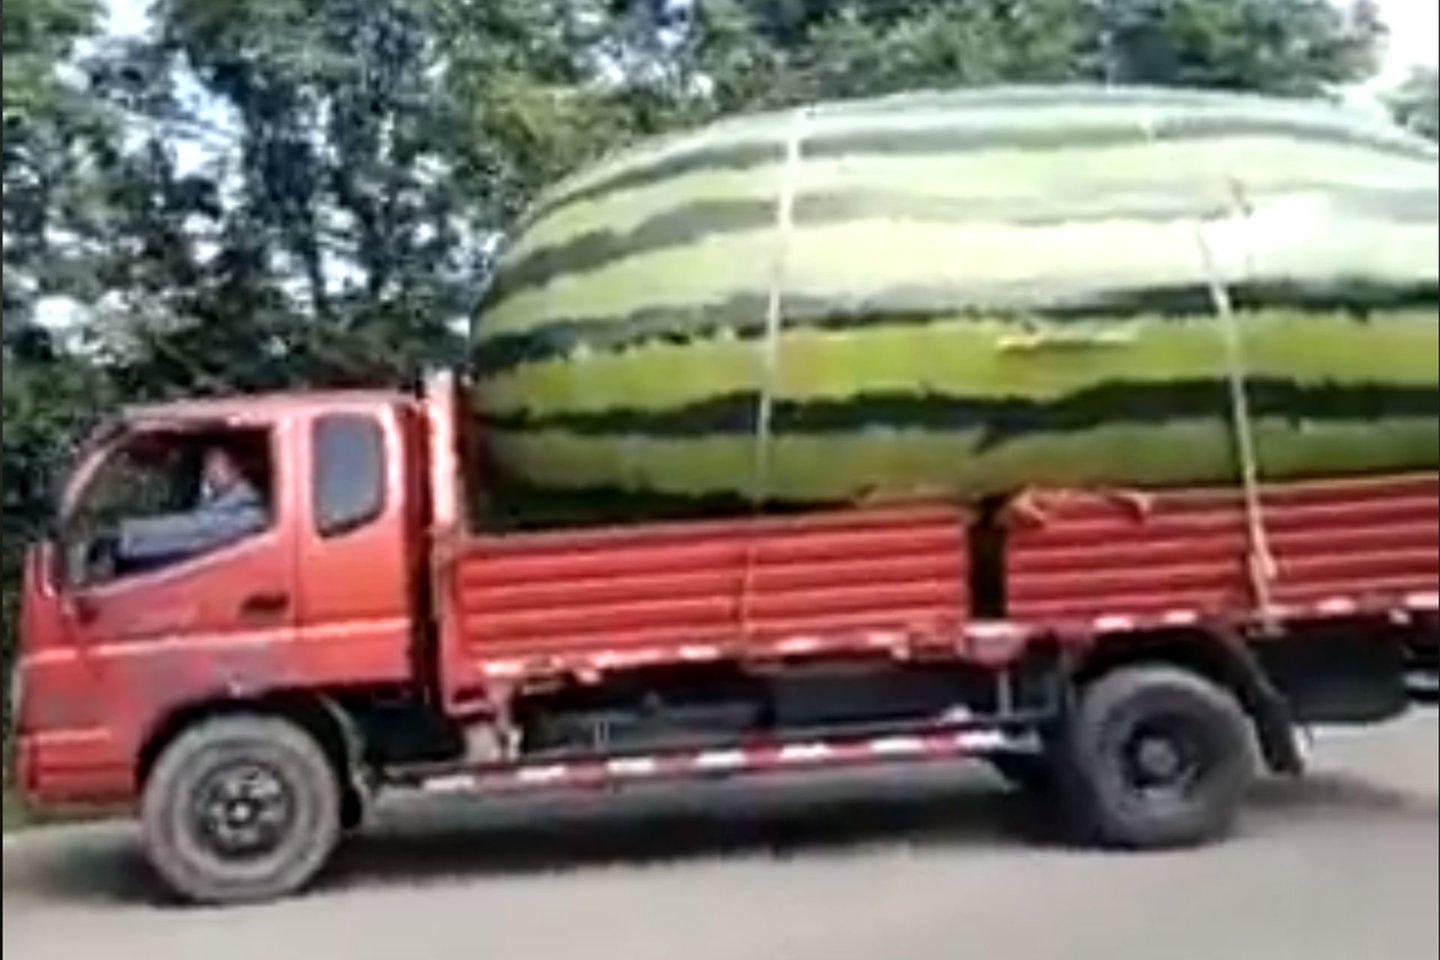  Vairuotojas pastebėjo sunkvežimį, kuri vežė gigantišką arbūzą primenantį krovinį.<br> Ekrano nuotr.